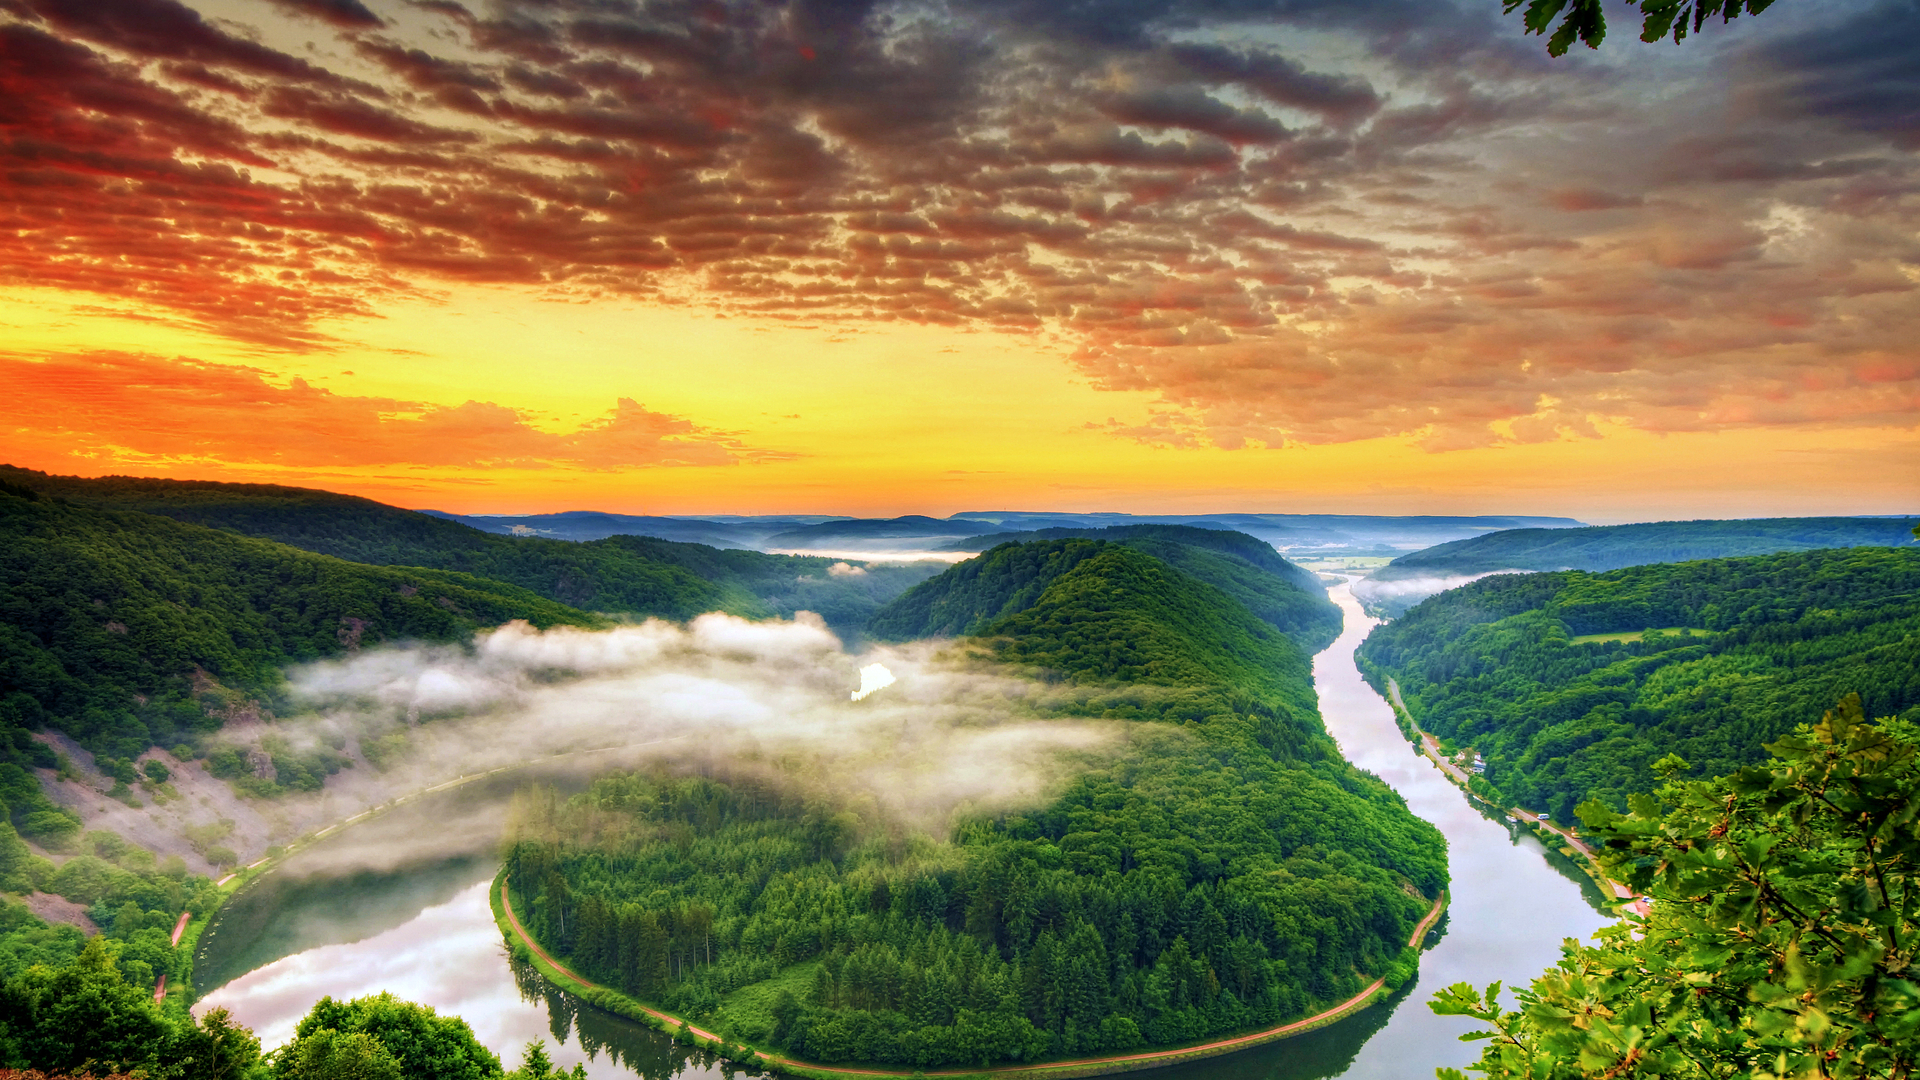 Скачать обои бесплатно Природа, Река, Германия, Земля/природа, Закат Солнца картинка на рабочий стол ПК